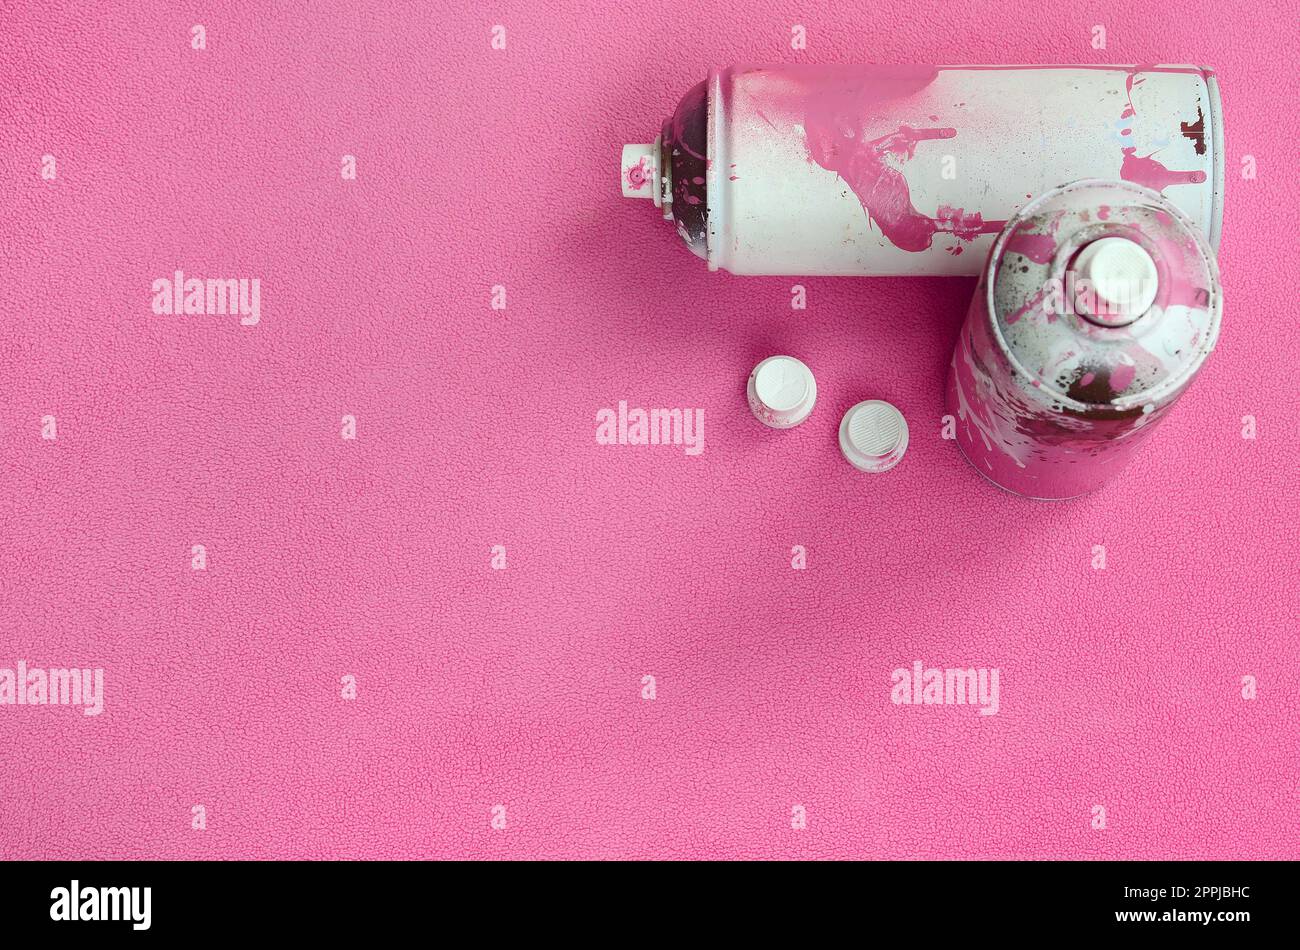 Einige gebrauchte rosafarbene Spraydosen und Düsen mit Lacktropfen liegen auf einer Decke aus weichem und pelzigem hellrosa Vlies. Klassische Damenfarbe. Graffiti-Hooliganismus-Konzept Stockfoto